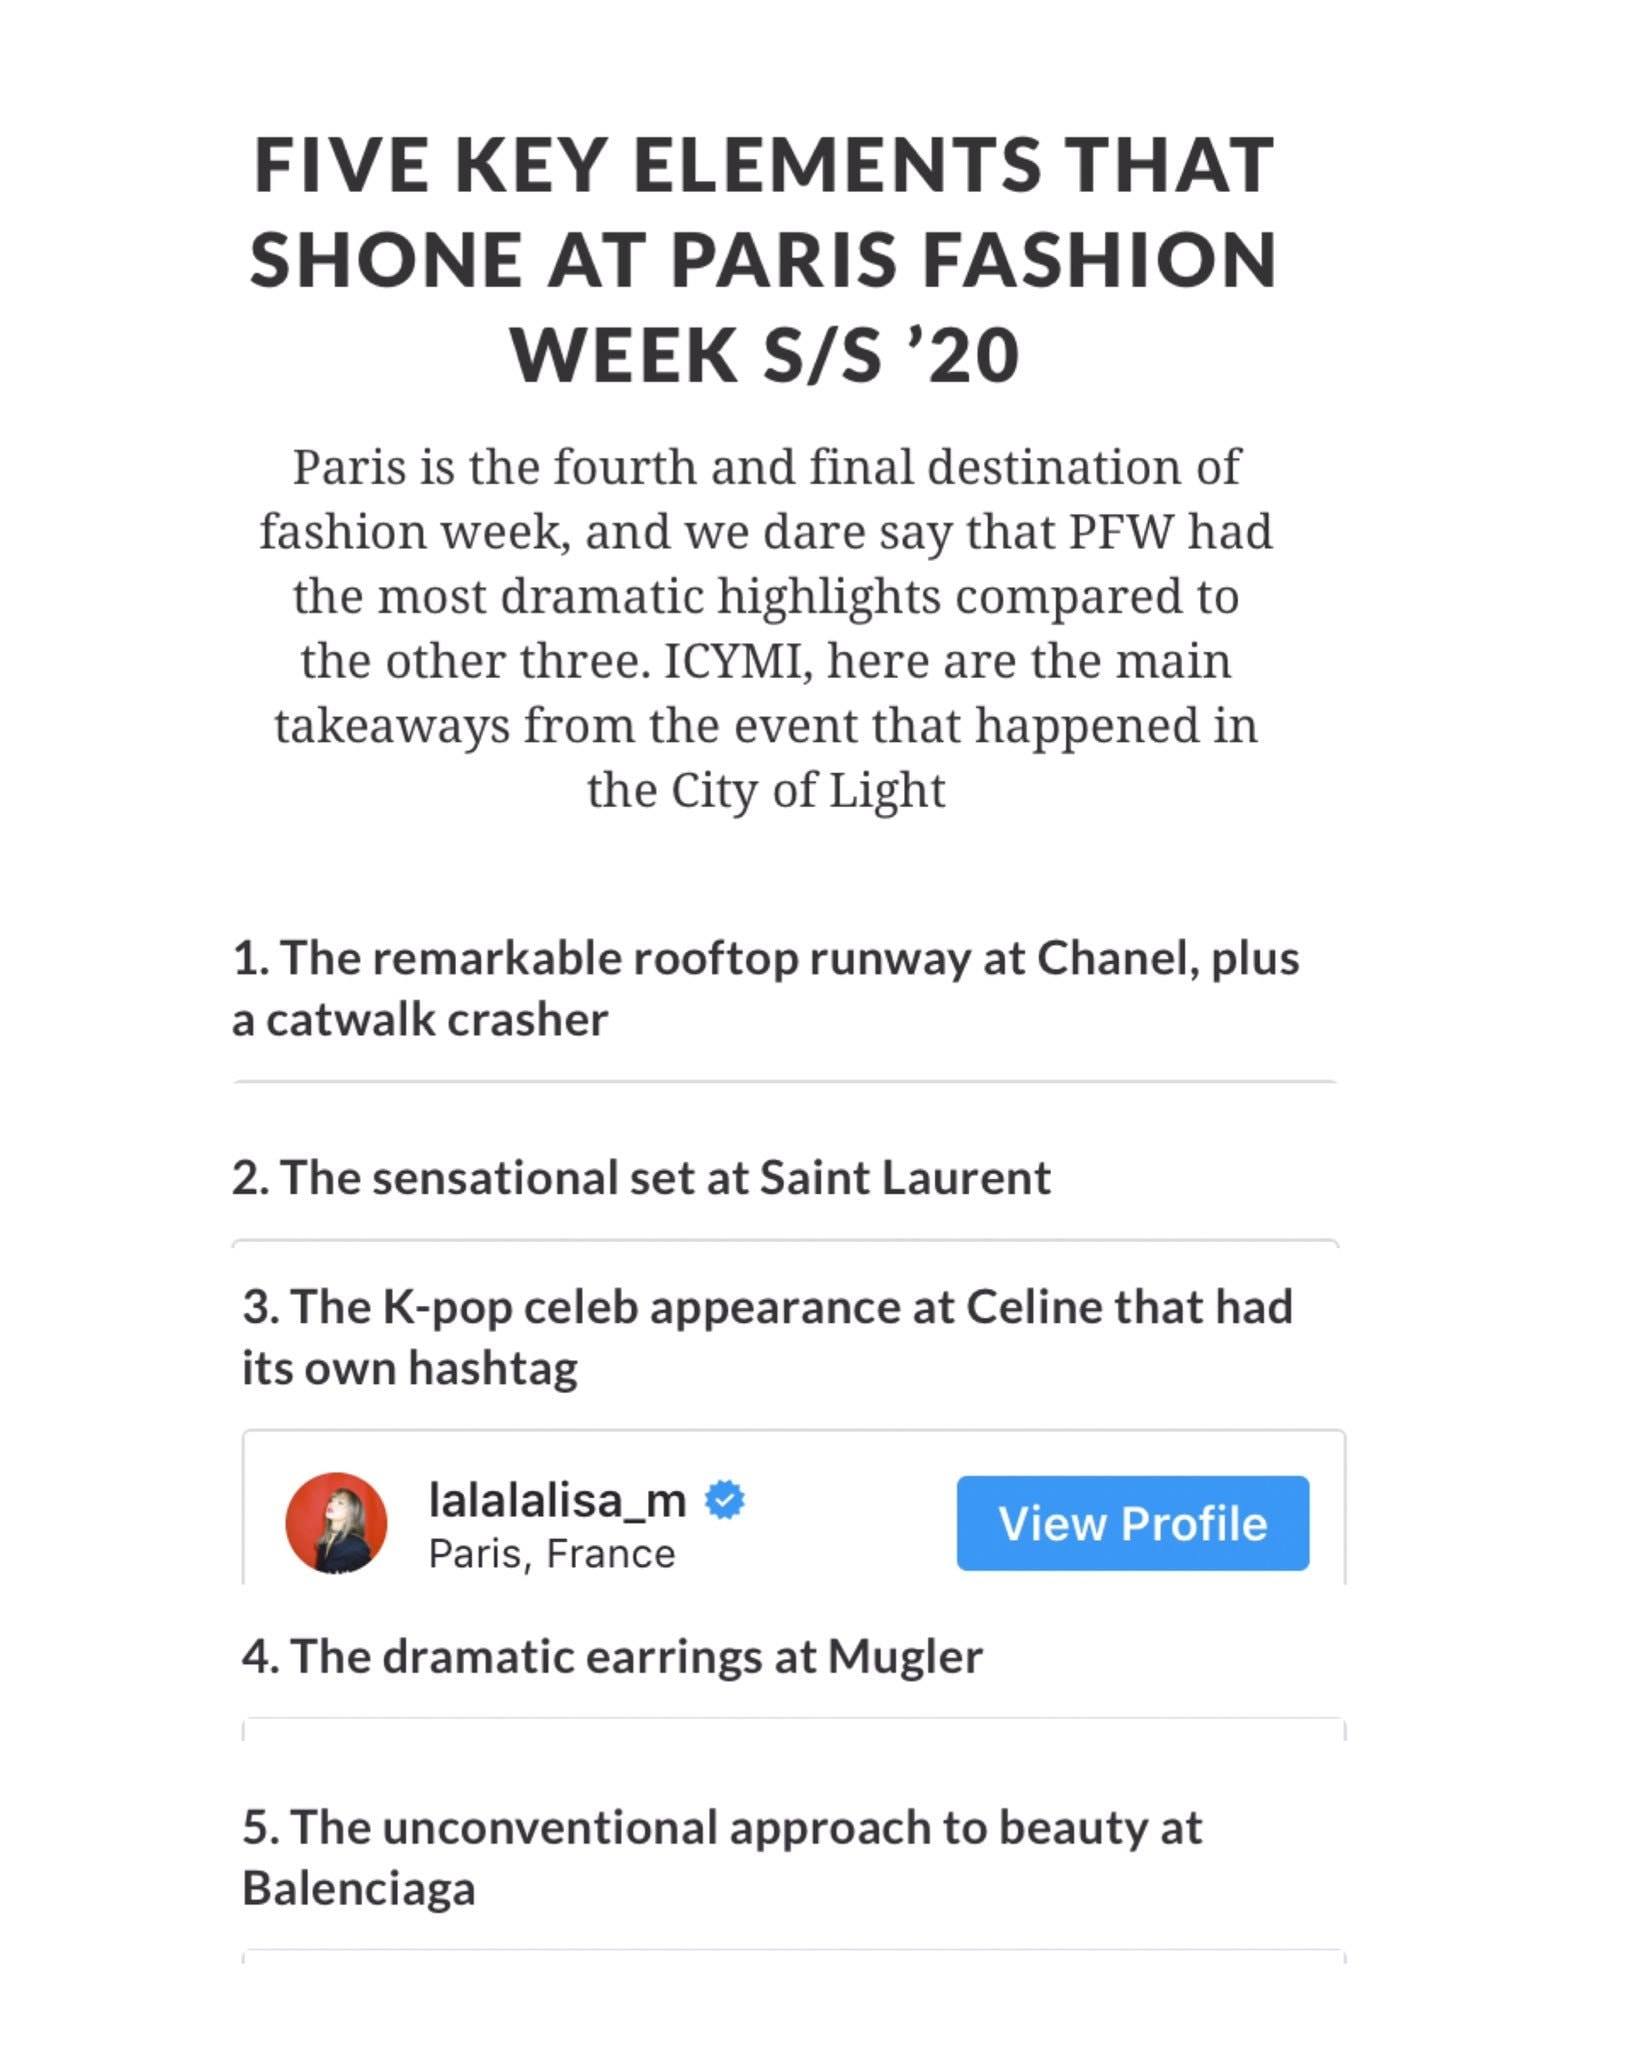 Tạp chí HerWorld đã lựa chọn Lisa BLACKPINK chính là 5 nhân tố quan trọng tỏa sáng tại Paris Fashion Week SS20 (Nguồn: Internet)